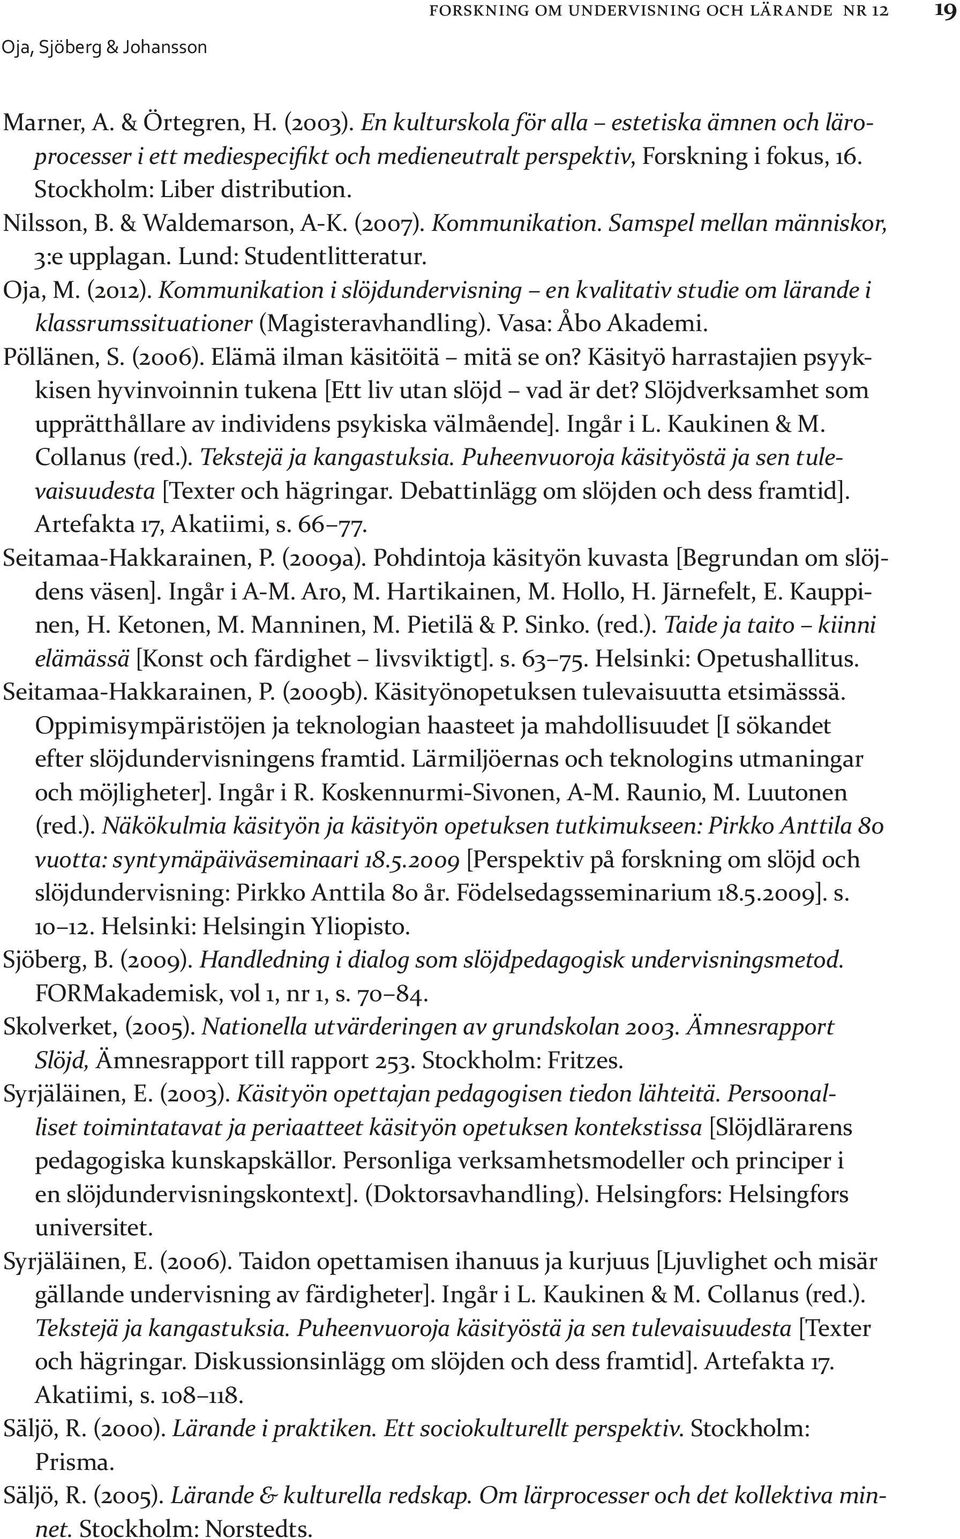 (2007). Kommunikation. Samspel mellan människor, 3:e upplagan. Lund: Studentlitteratur. Oja, M. (2012).